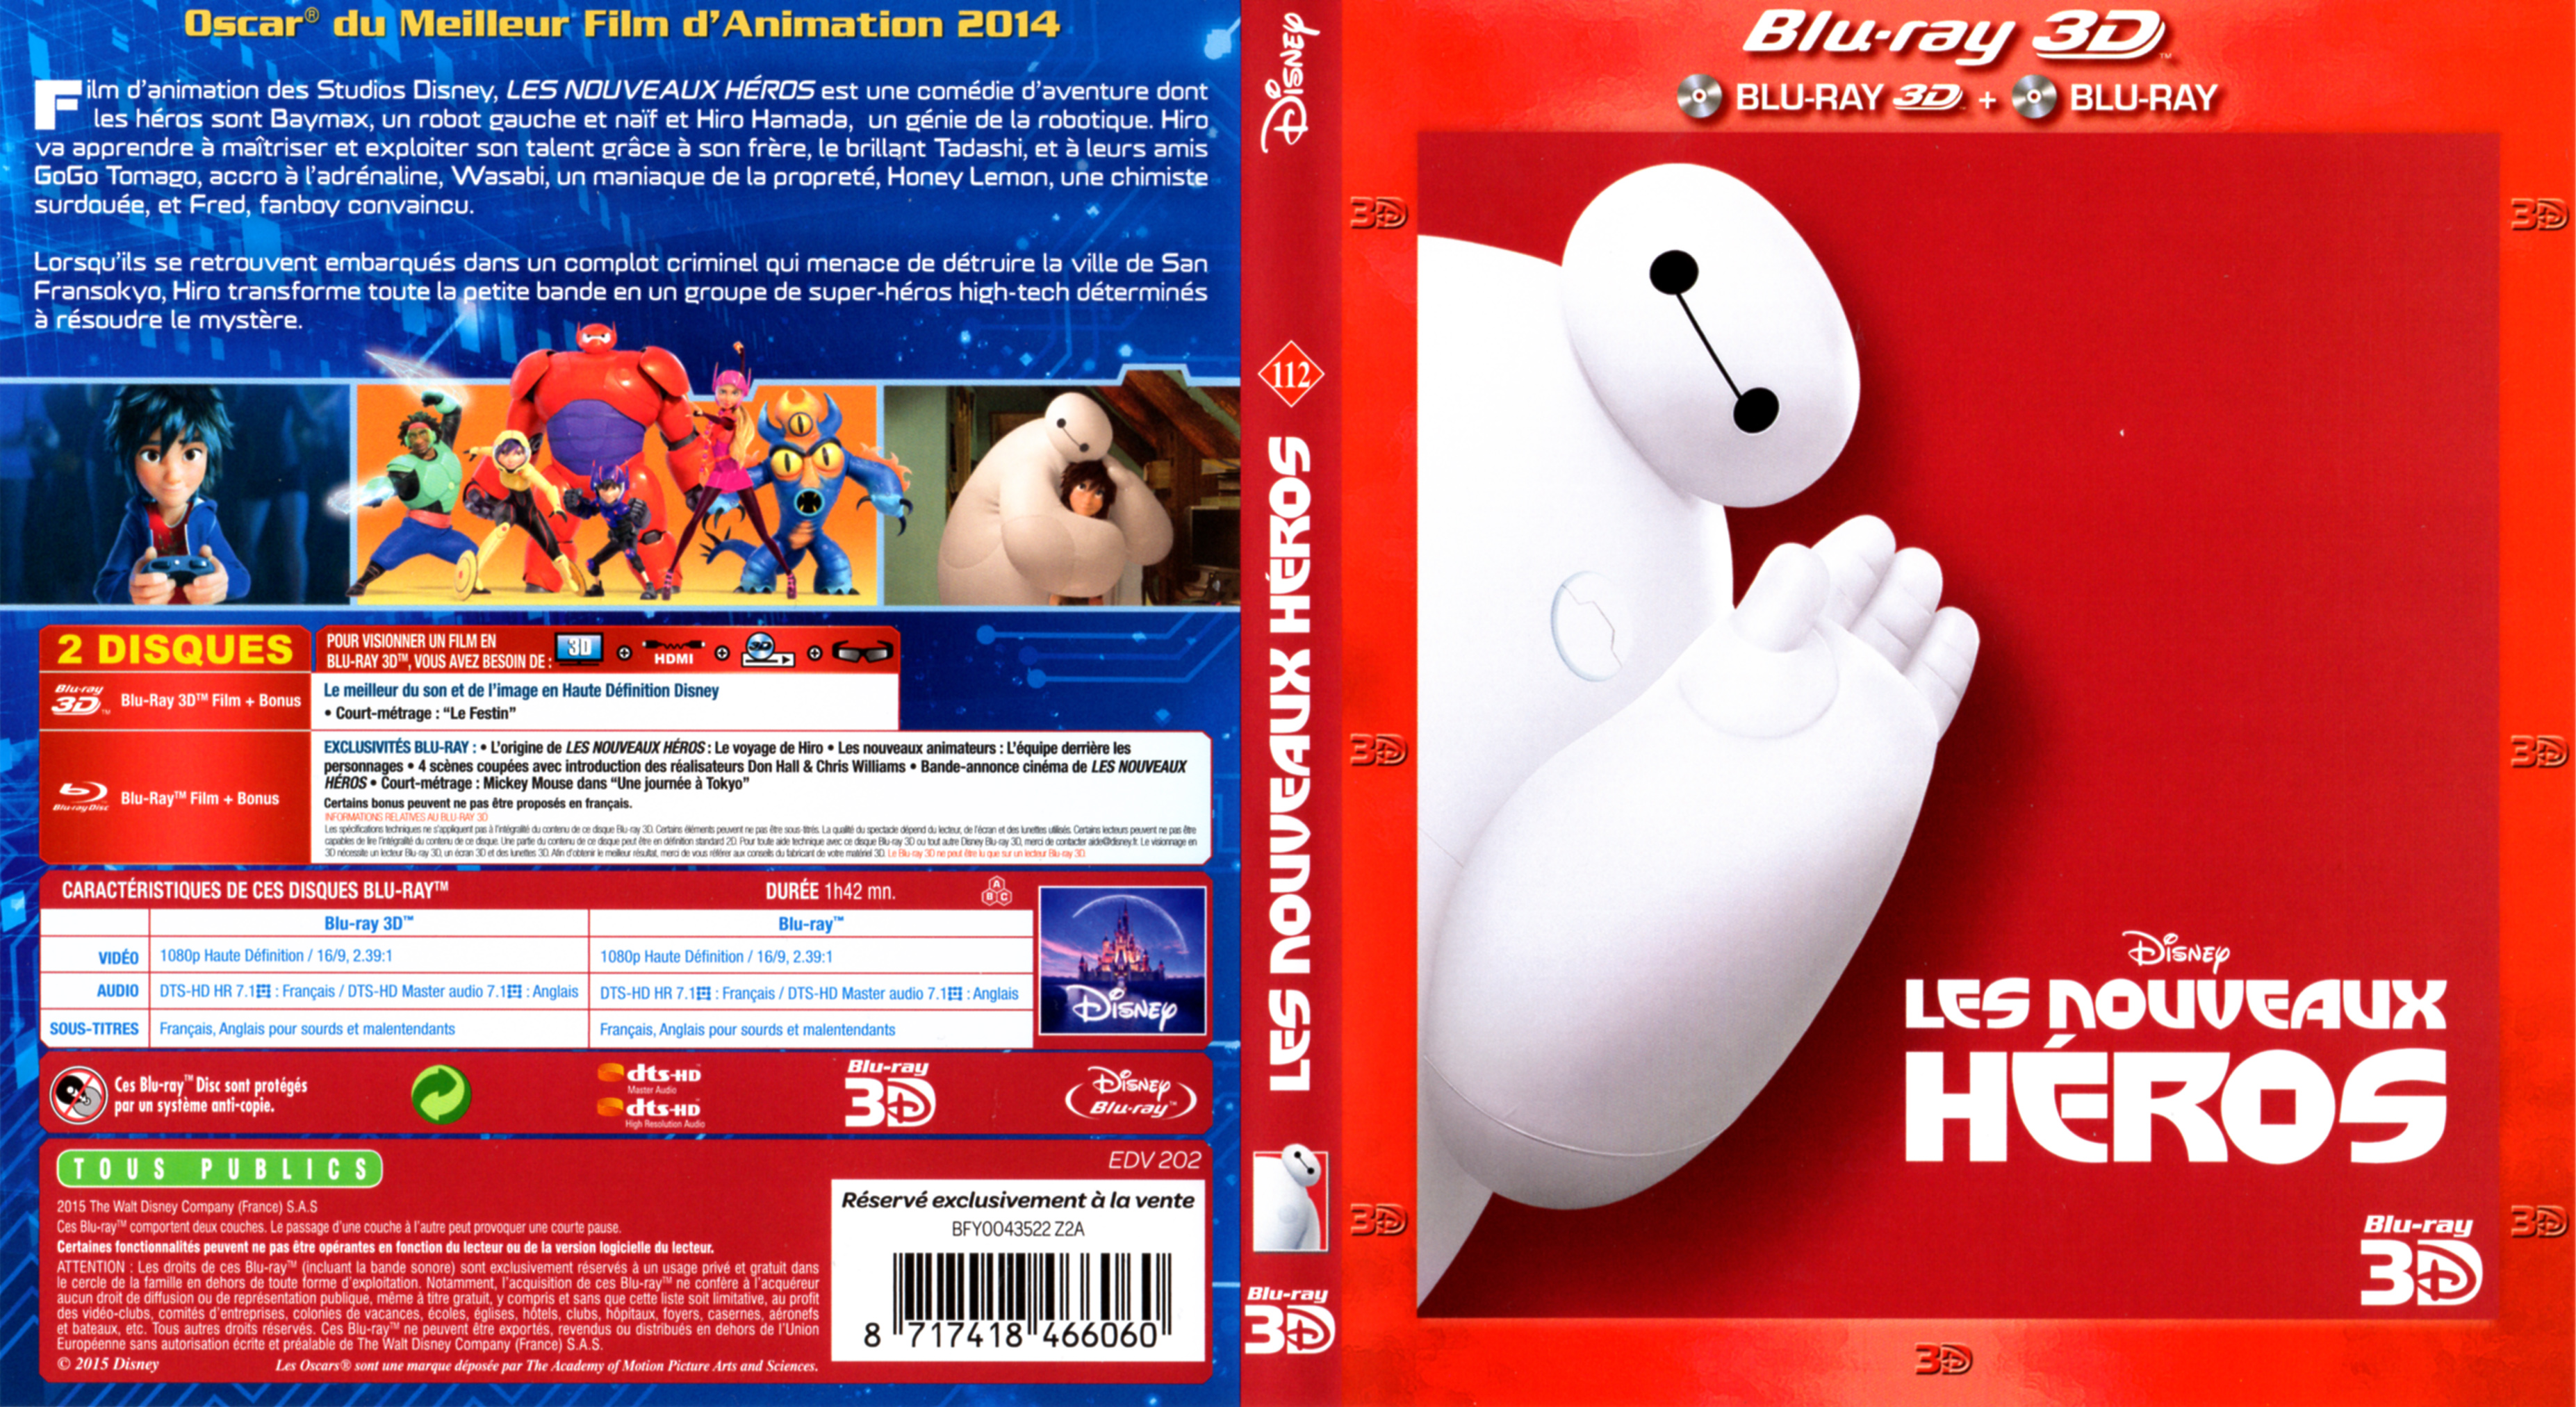 Jaquette DVD Les nouveaux hros 3D (BLU-RAY)